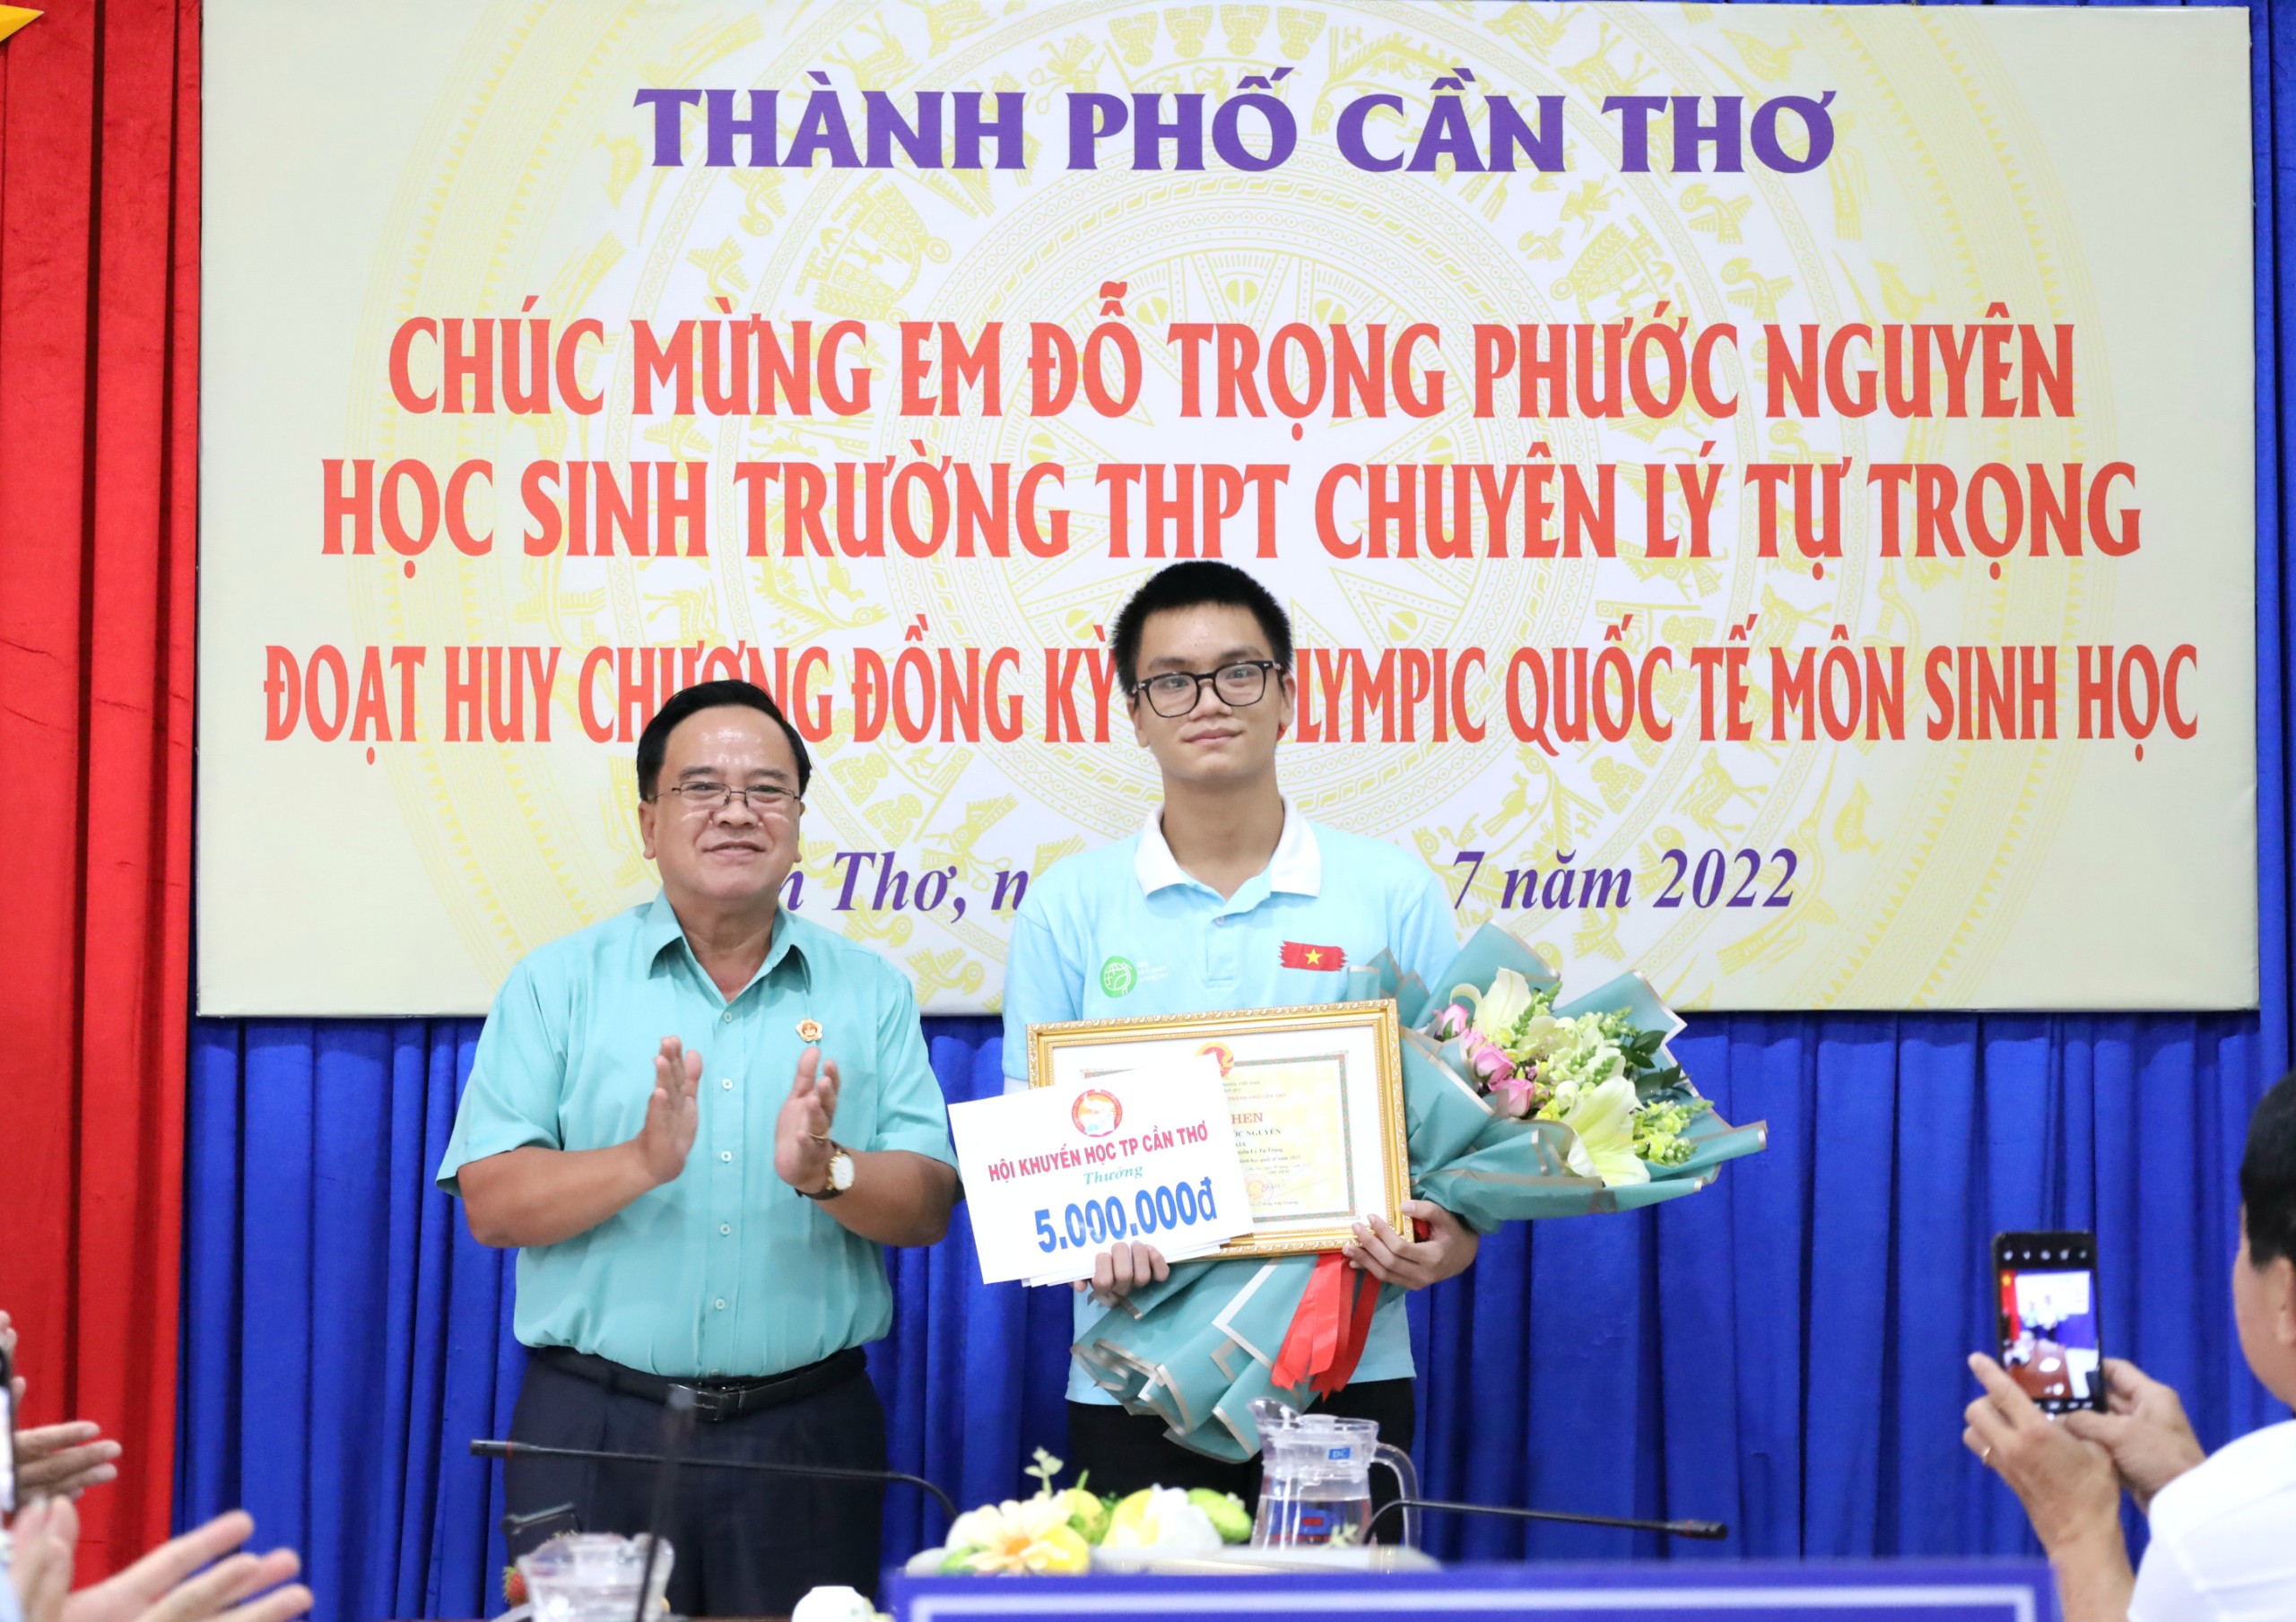 Ông Nguyễn Thanh Xuân - Chủ tịch Hội khuyến học TP. Cần Thơ trao quà cho em Đỗ Trọng Phước Nguyên.